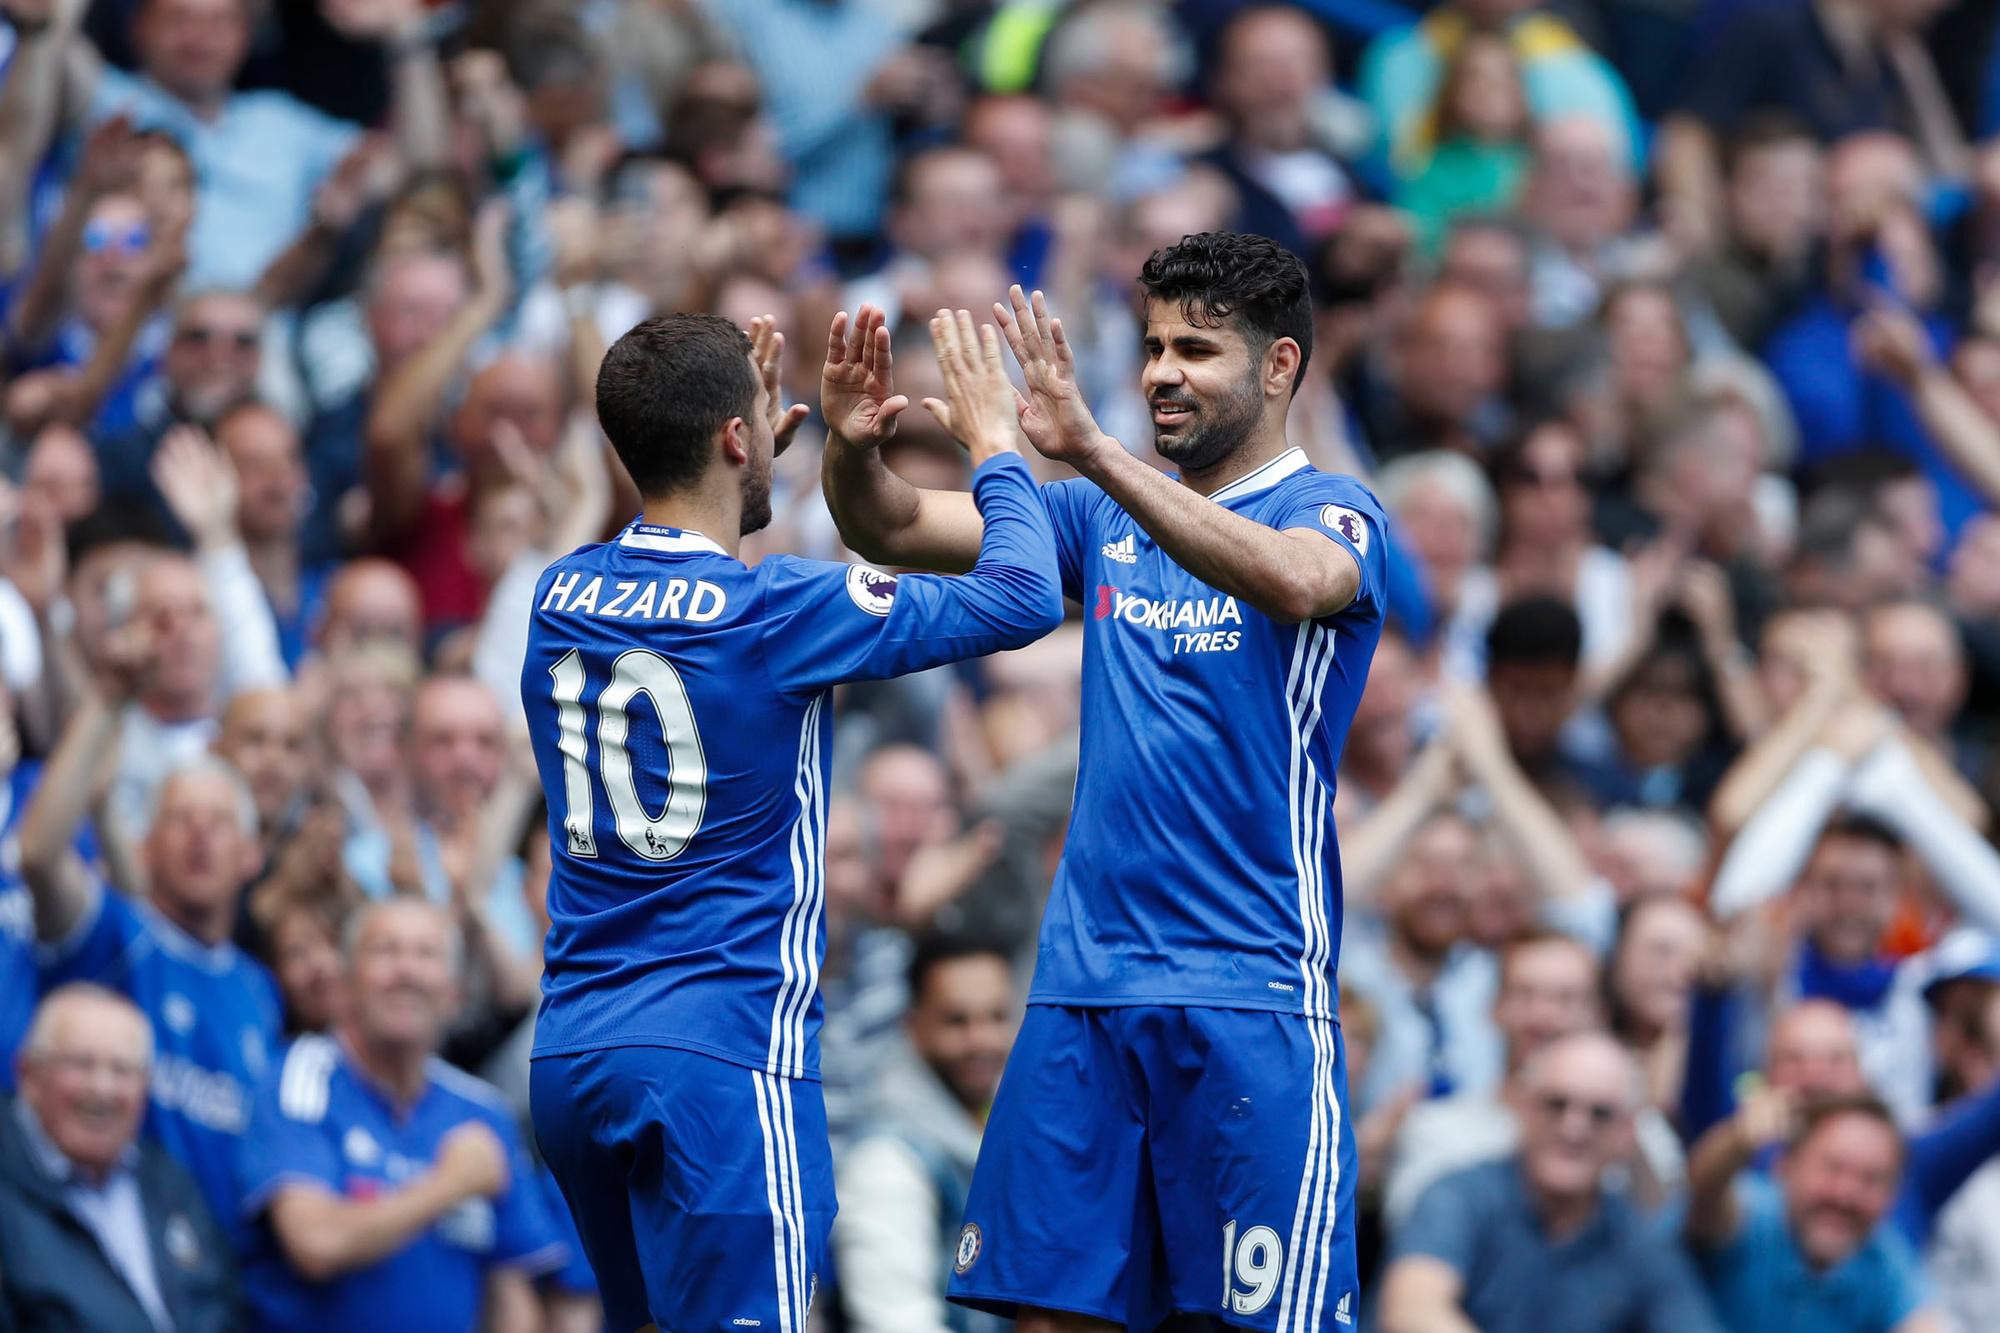 Diego Costa was de perfecte spits voor Chelsea: hij scoorde veel, maakte oorlog in de zestien en kwam goed overeen met Eden Hazard